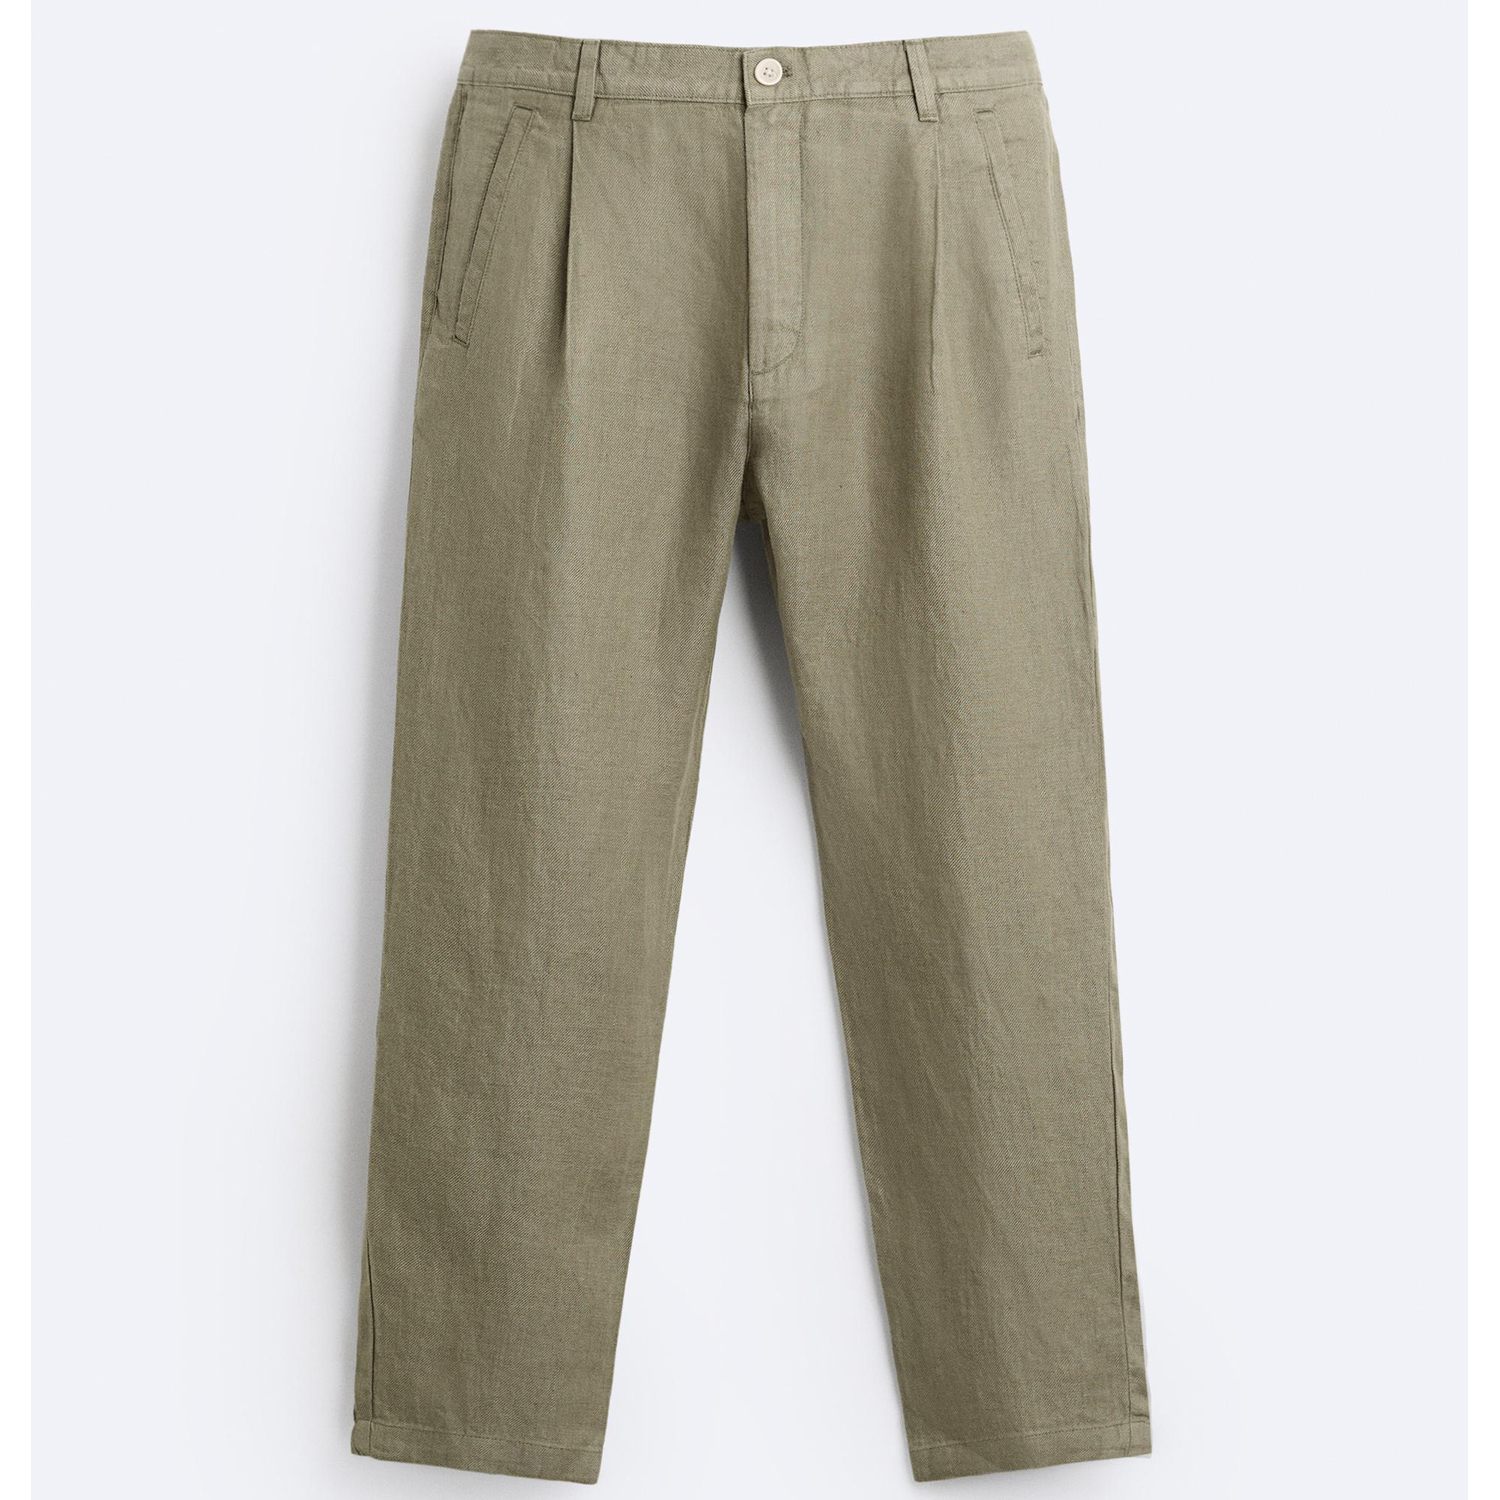 Брюки Zara 100% Linen, хаки брюки свободного кроя со складками